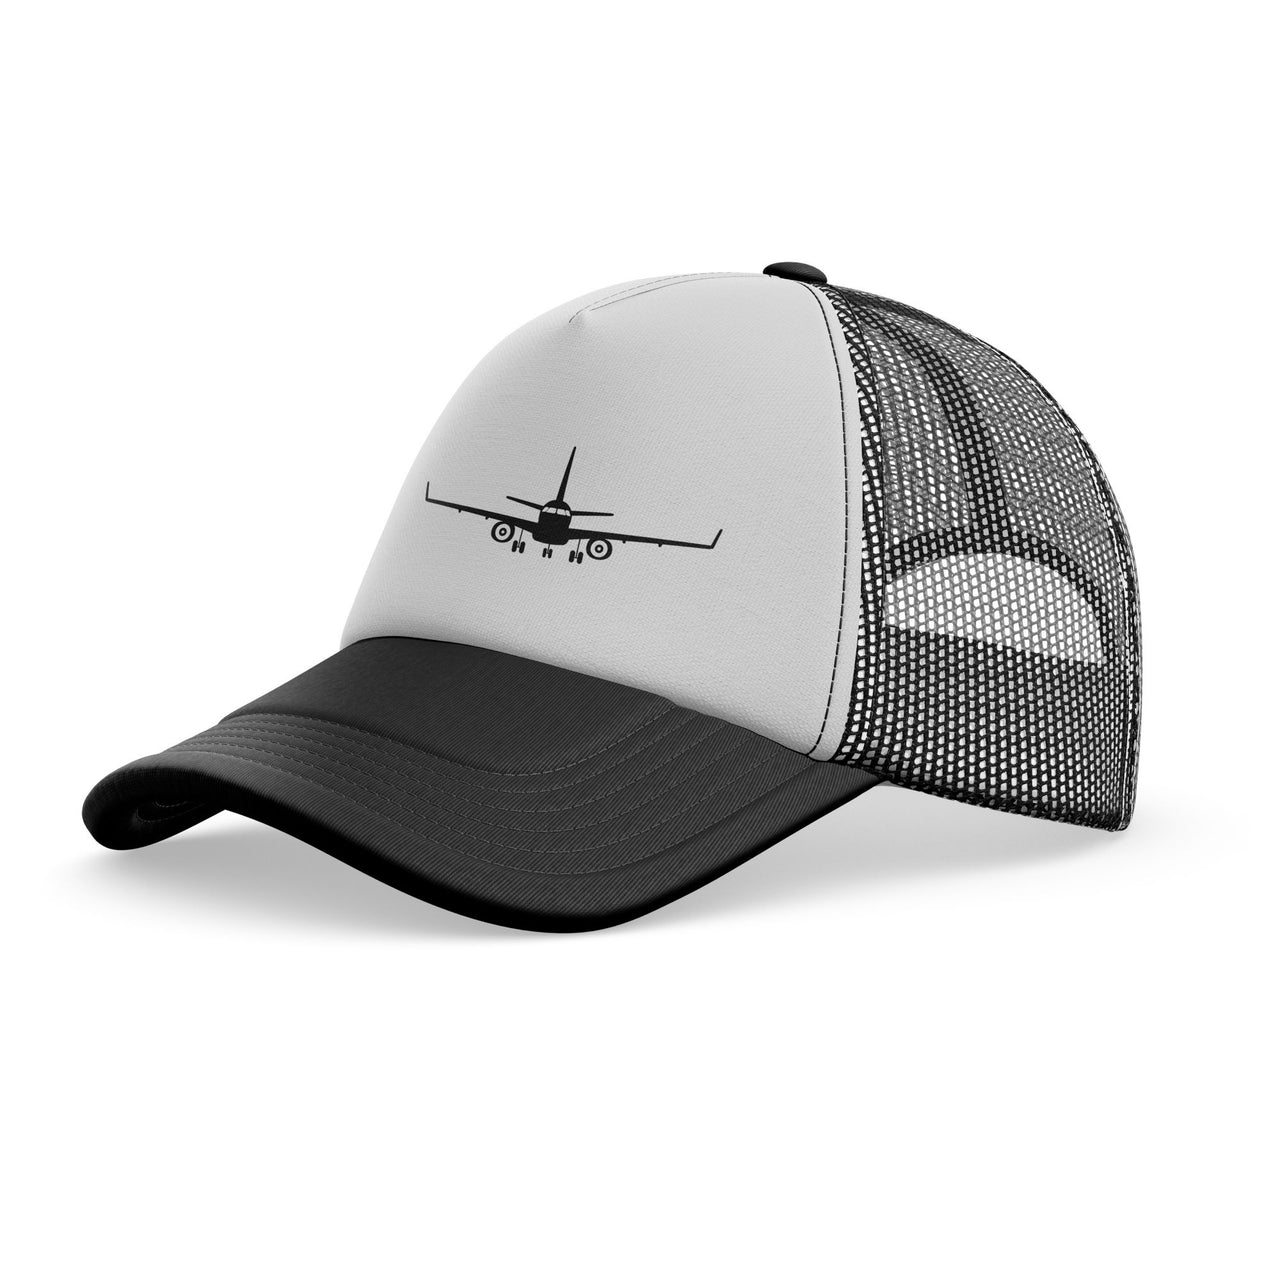 Embraer E-190 Silhouette Plane Designed Trucker Caps & Hats